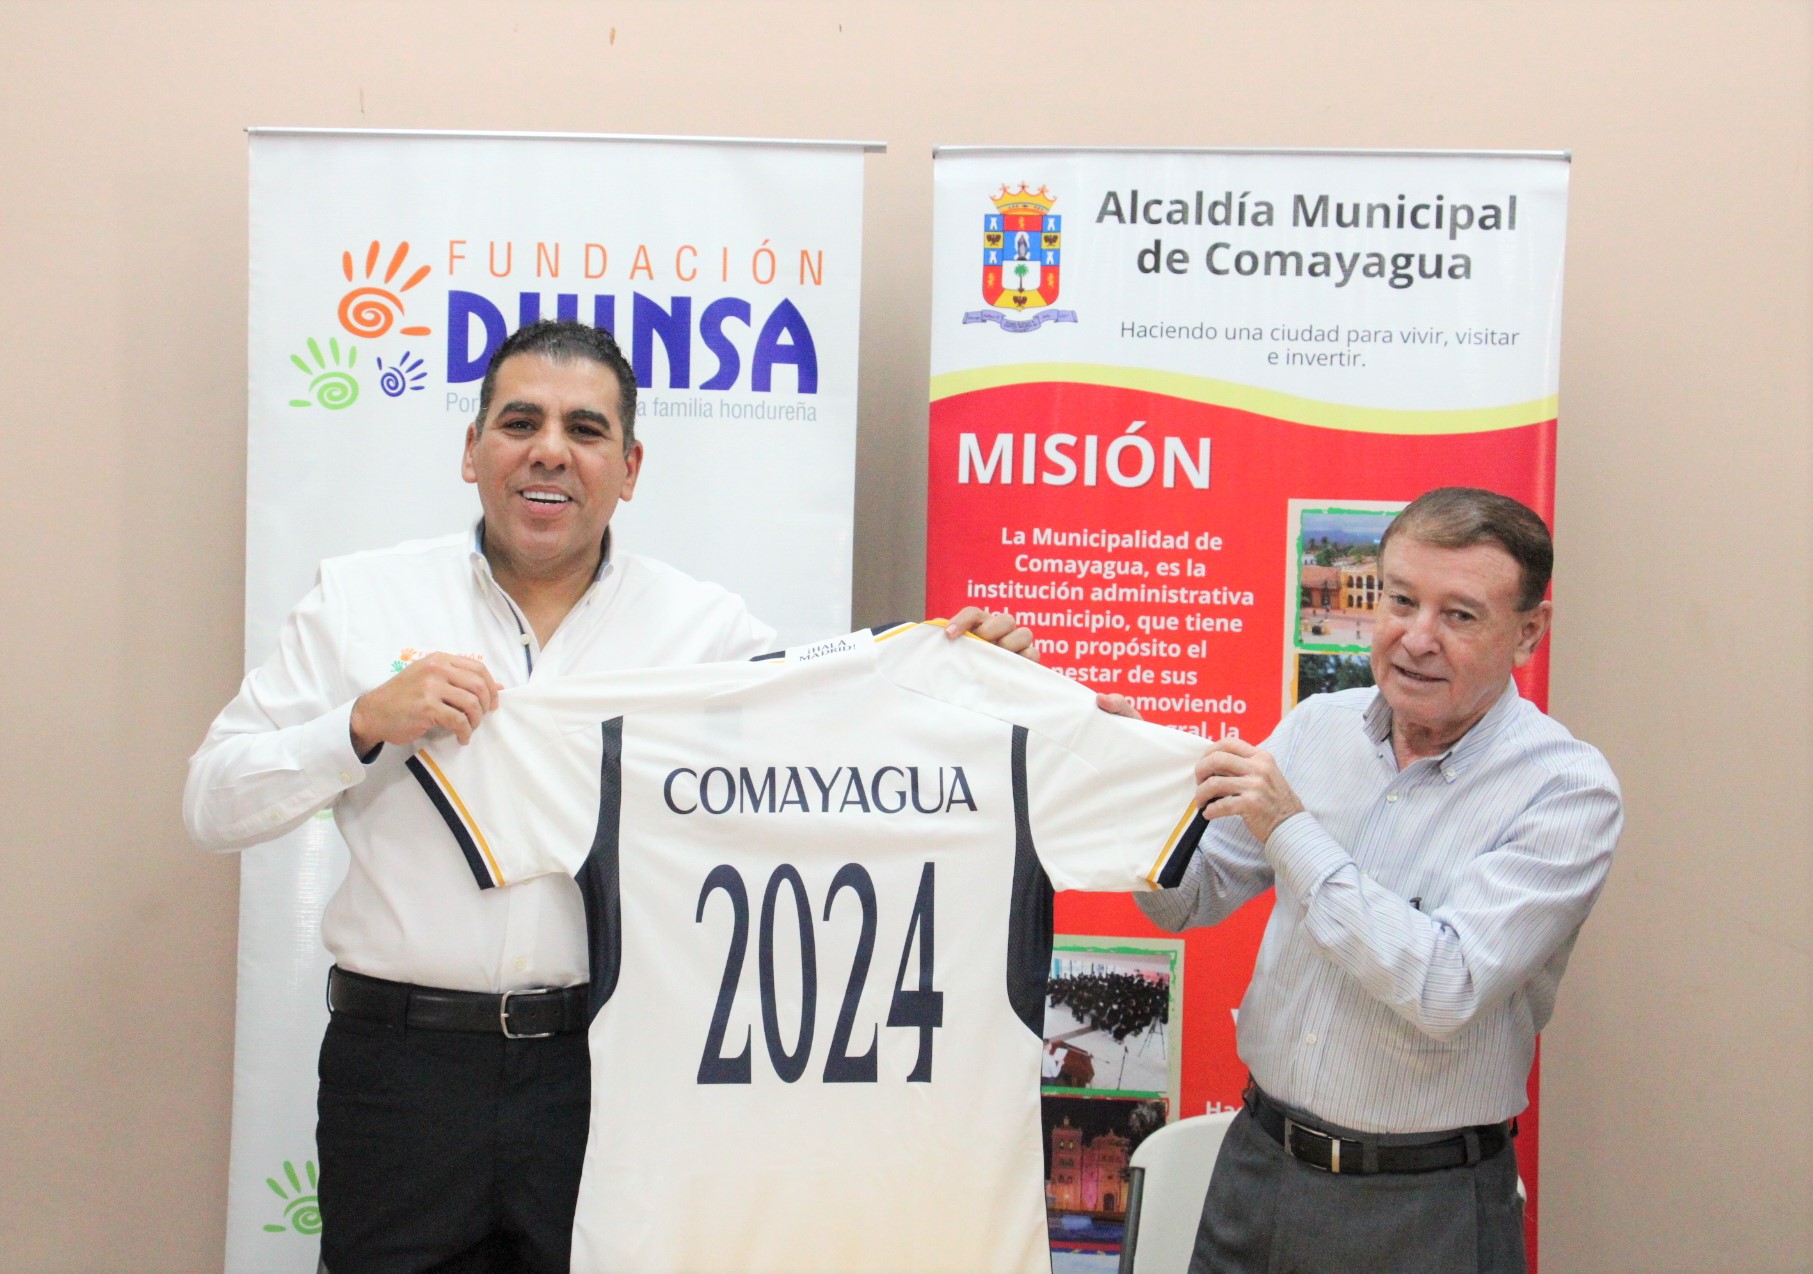 Alcaldía de Comayagua y Fundación Diunsa firman convenio de cooperación para desarrollar escuelas socio-deportiva con la  Fundación Real Madrid